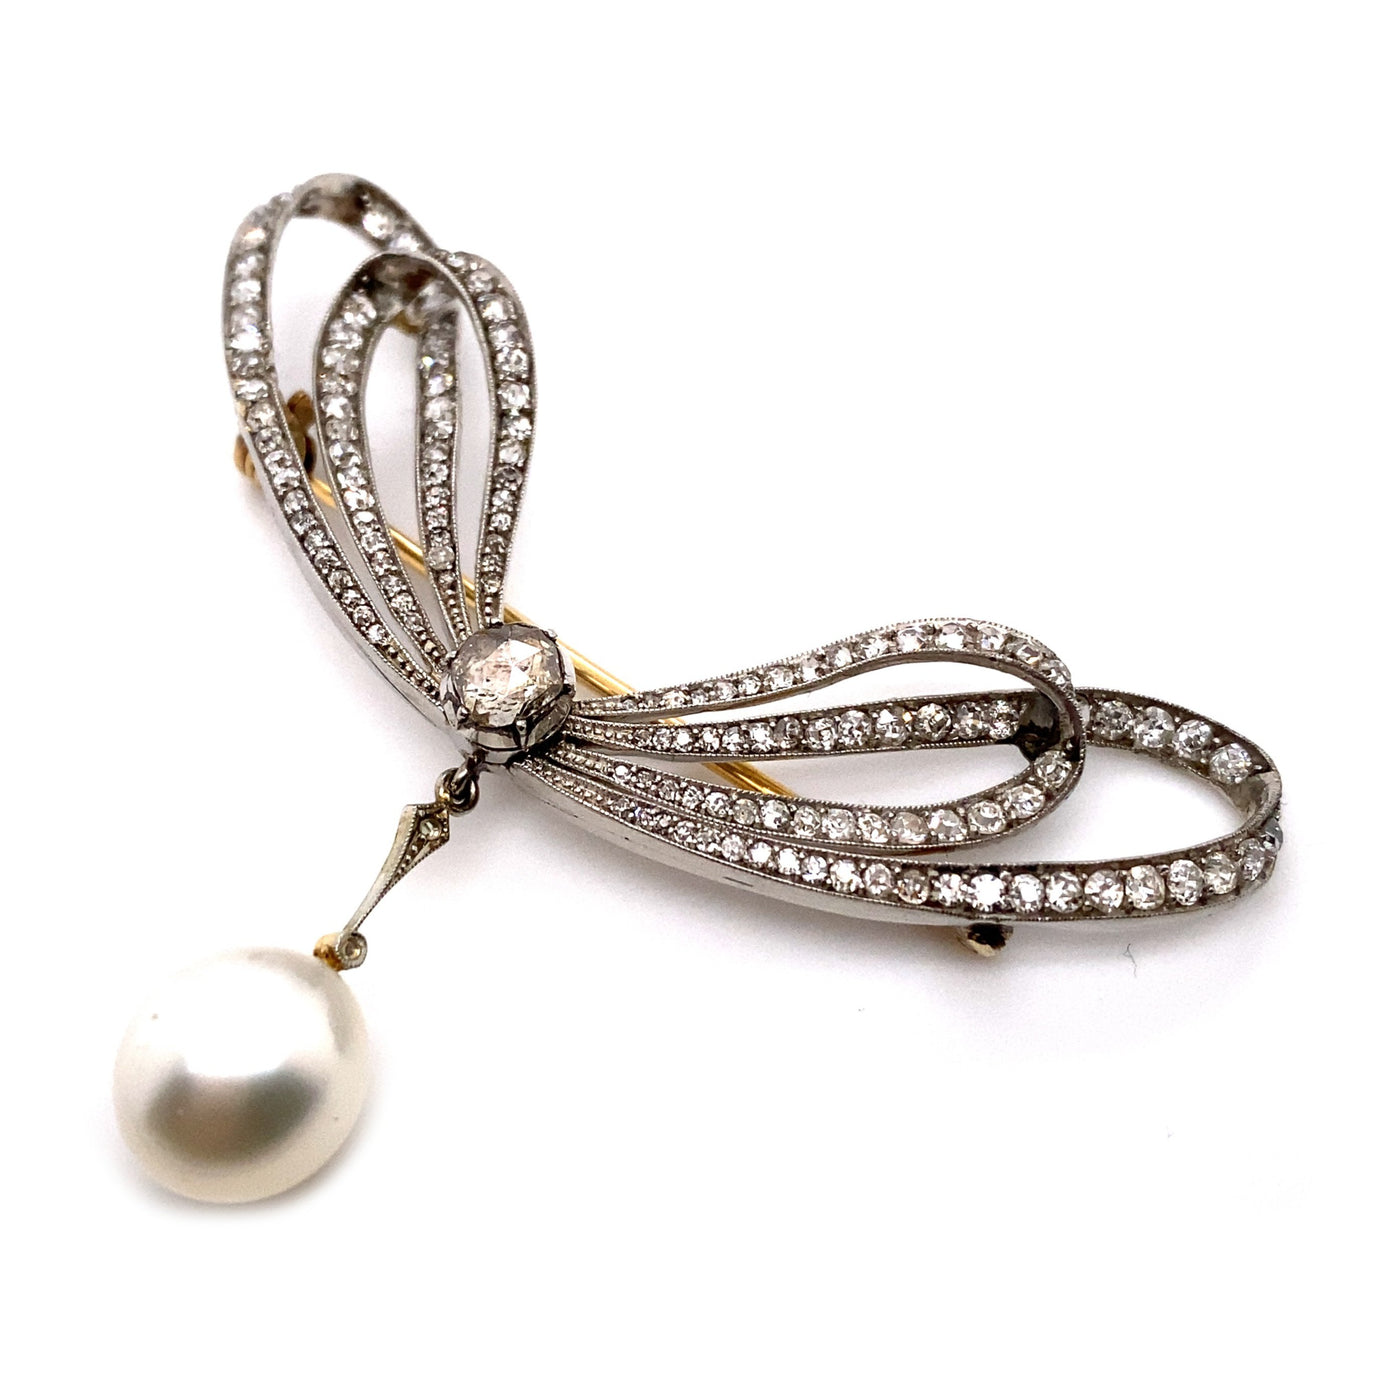 Take a bow - Feine Schleifenbrosche mit Diamanten und Perle